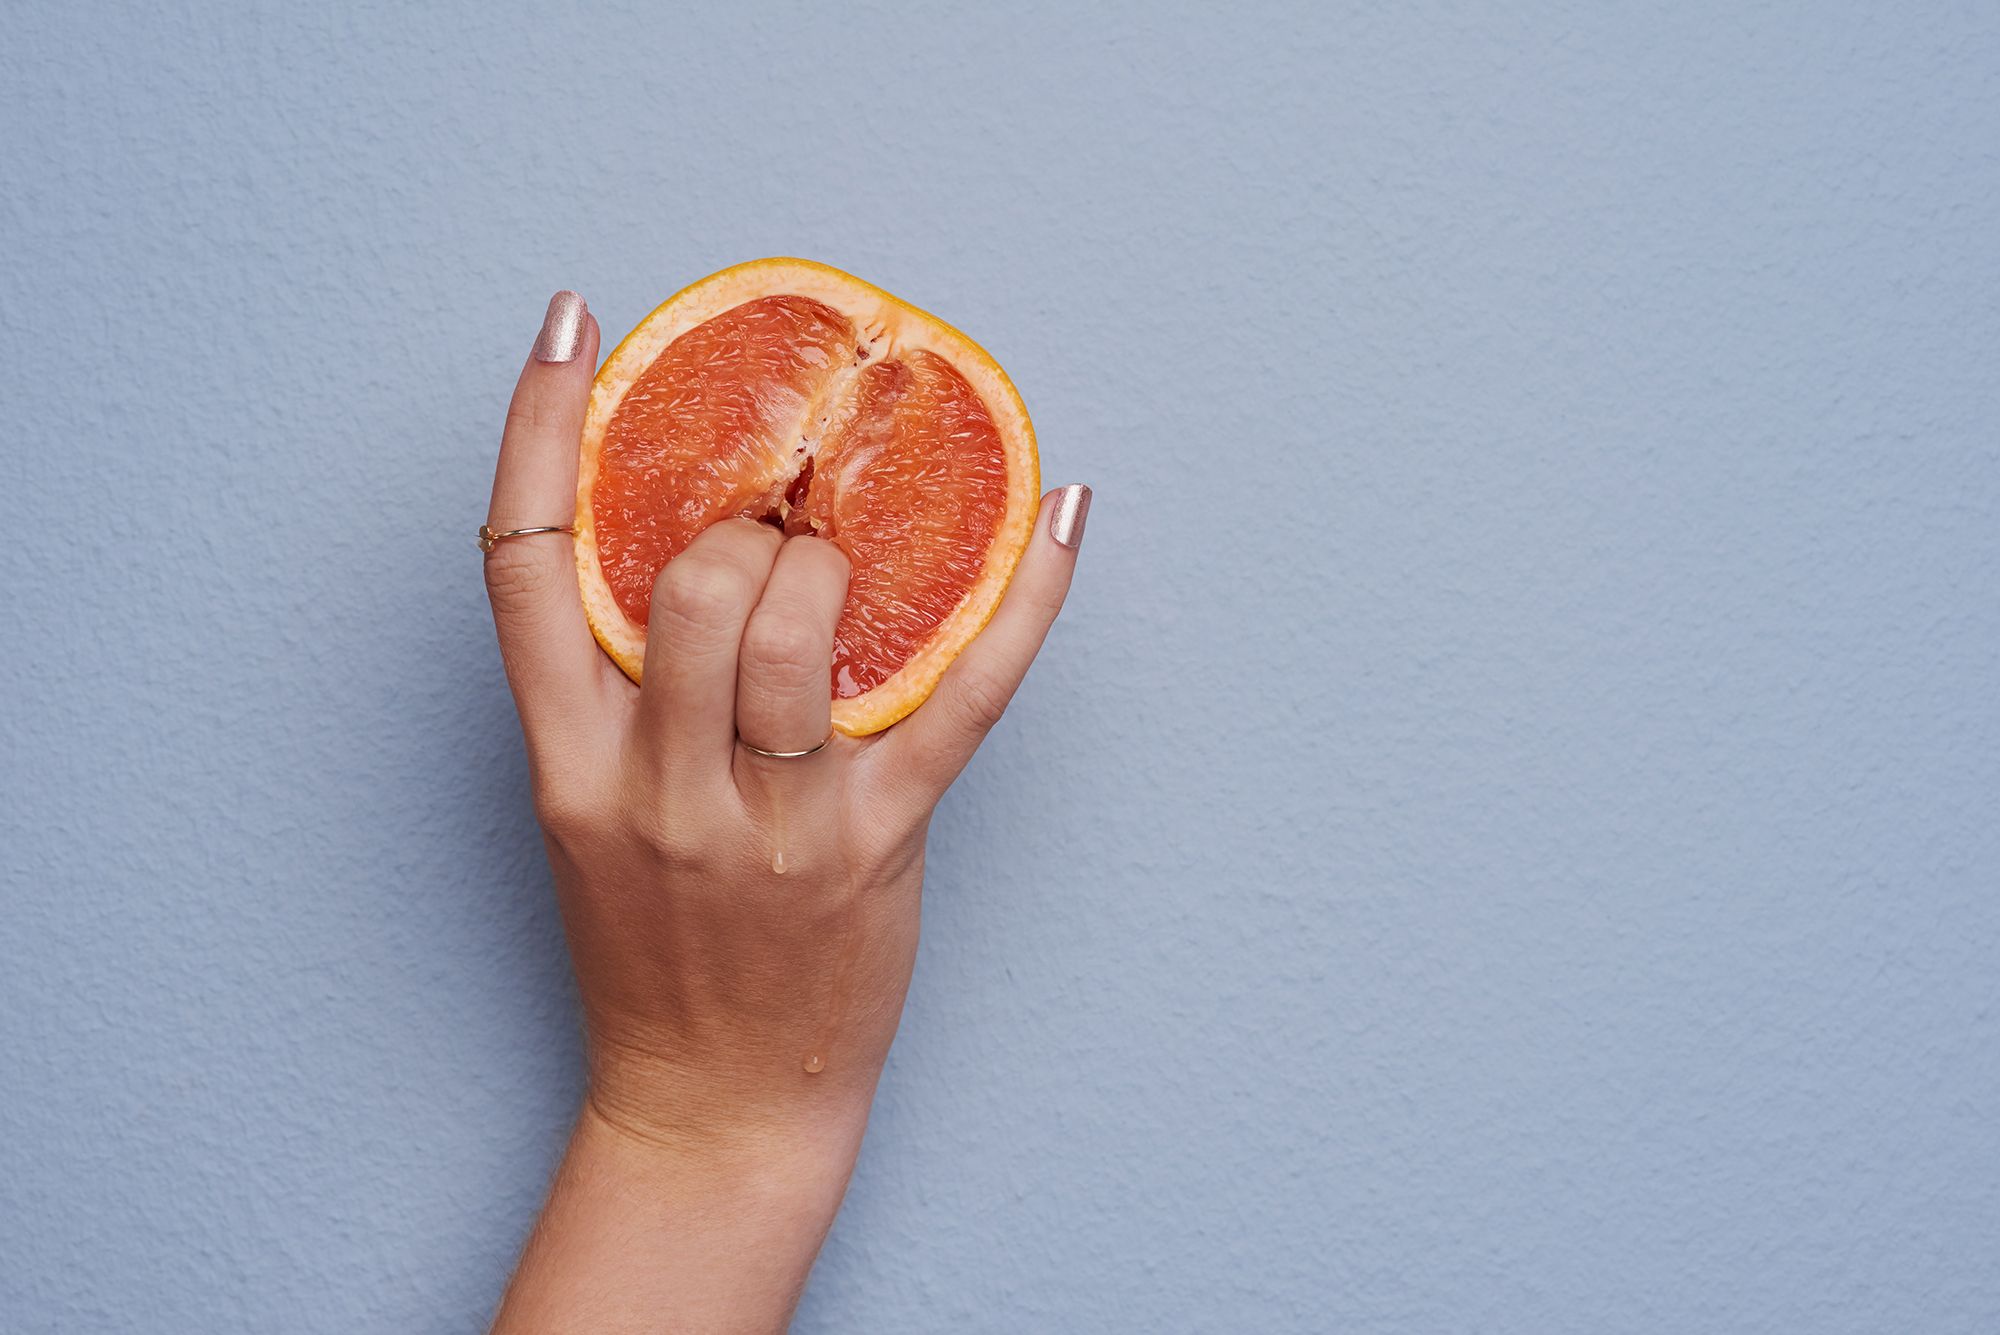 Frauenhand die mit zwei Fingern in eine Grapefruit sticht